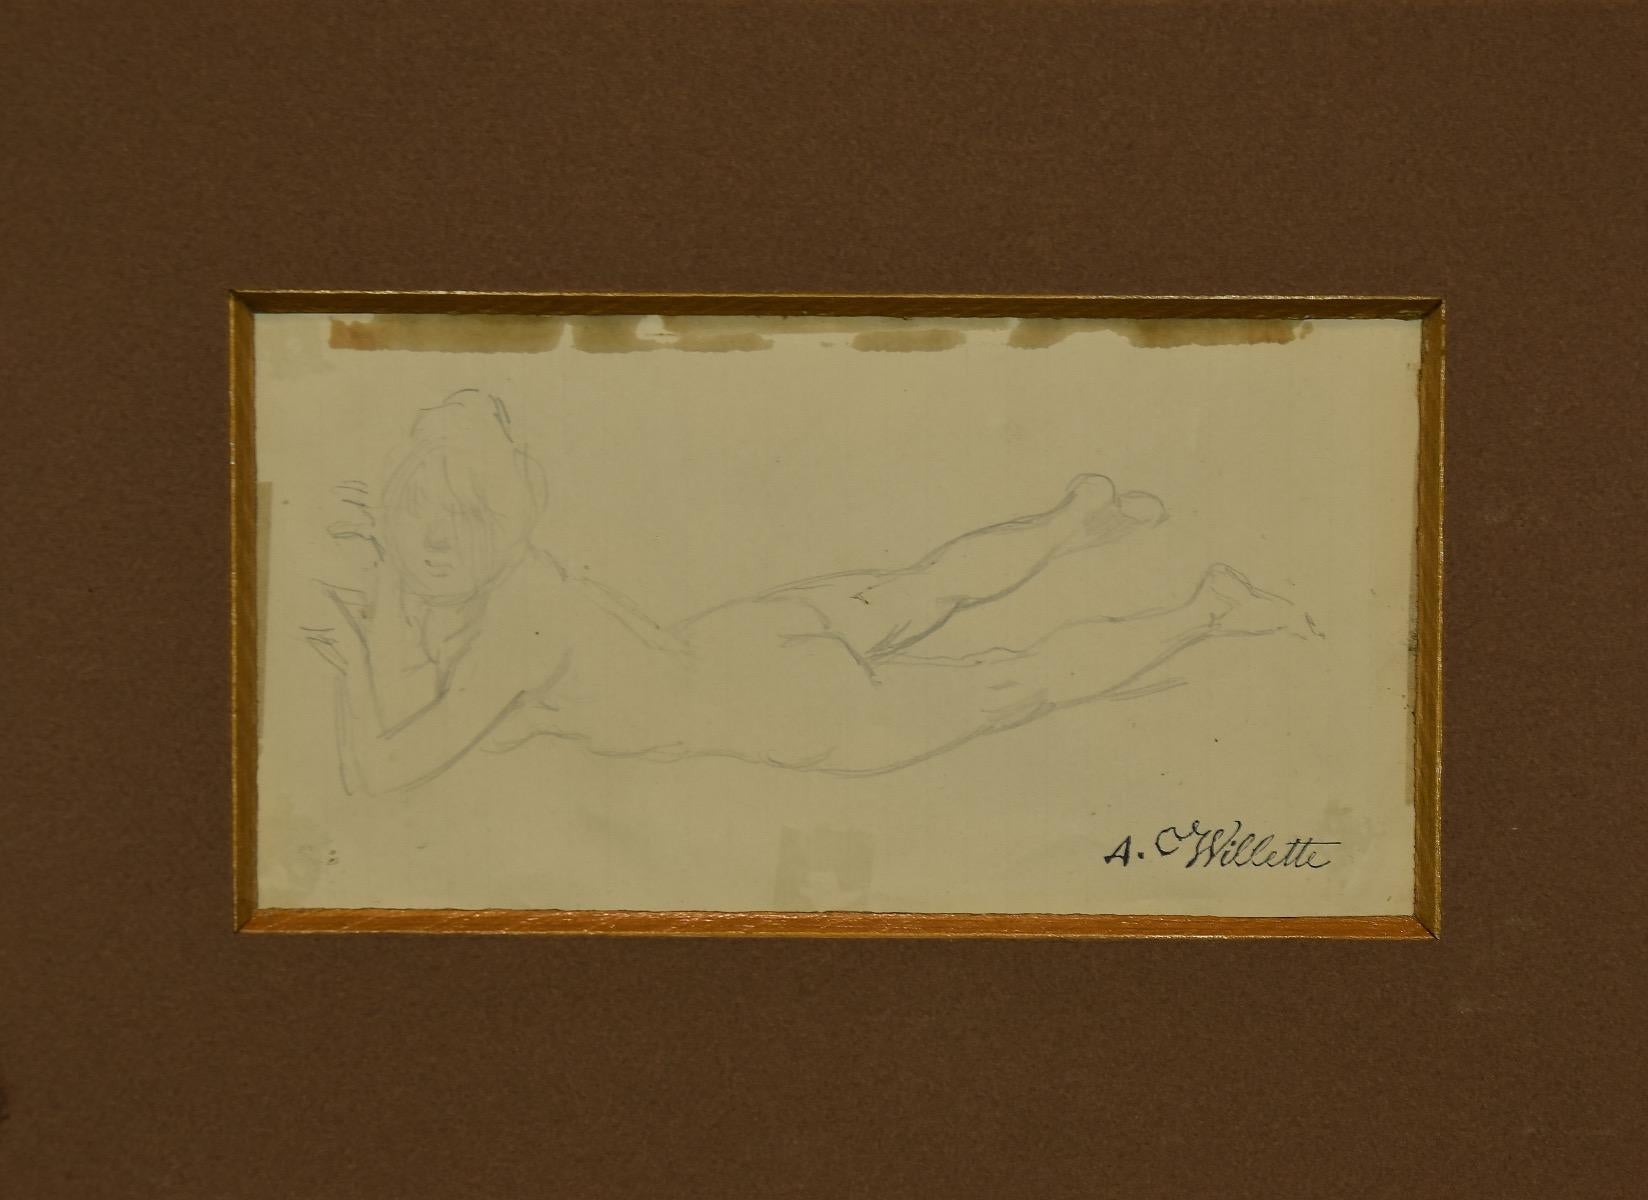 Nu de femme est un splendide dessin au crayon réalisé par Adolphe Léon Willette, un illustrateur, peintre, caricaturiste, lithographe et architecte français. L'état de conservation est très bon. 

En bas à droite, à la plume, se trouve